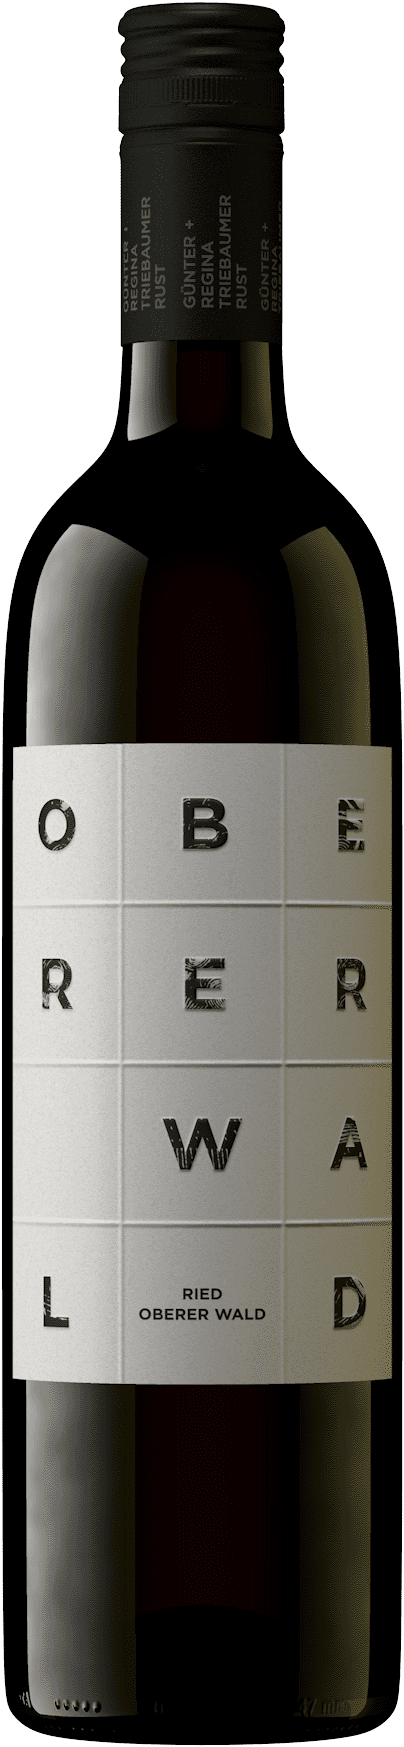 2019 Ried Oberer Wald Qualitätswein 0.75l